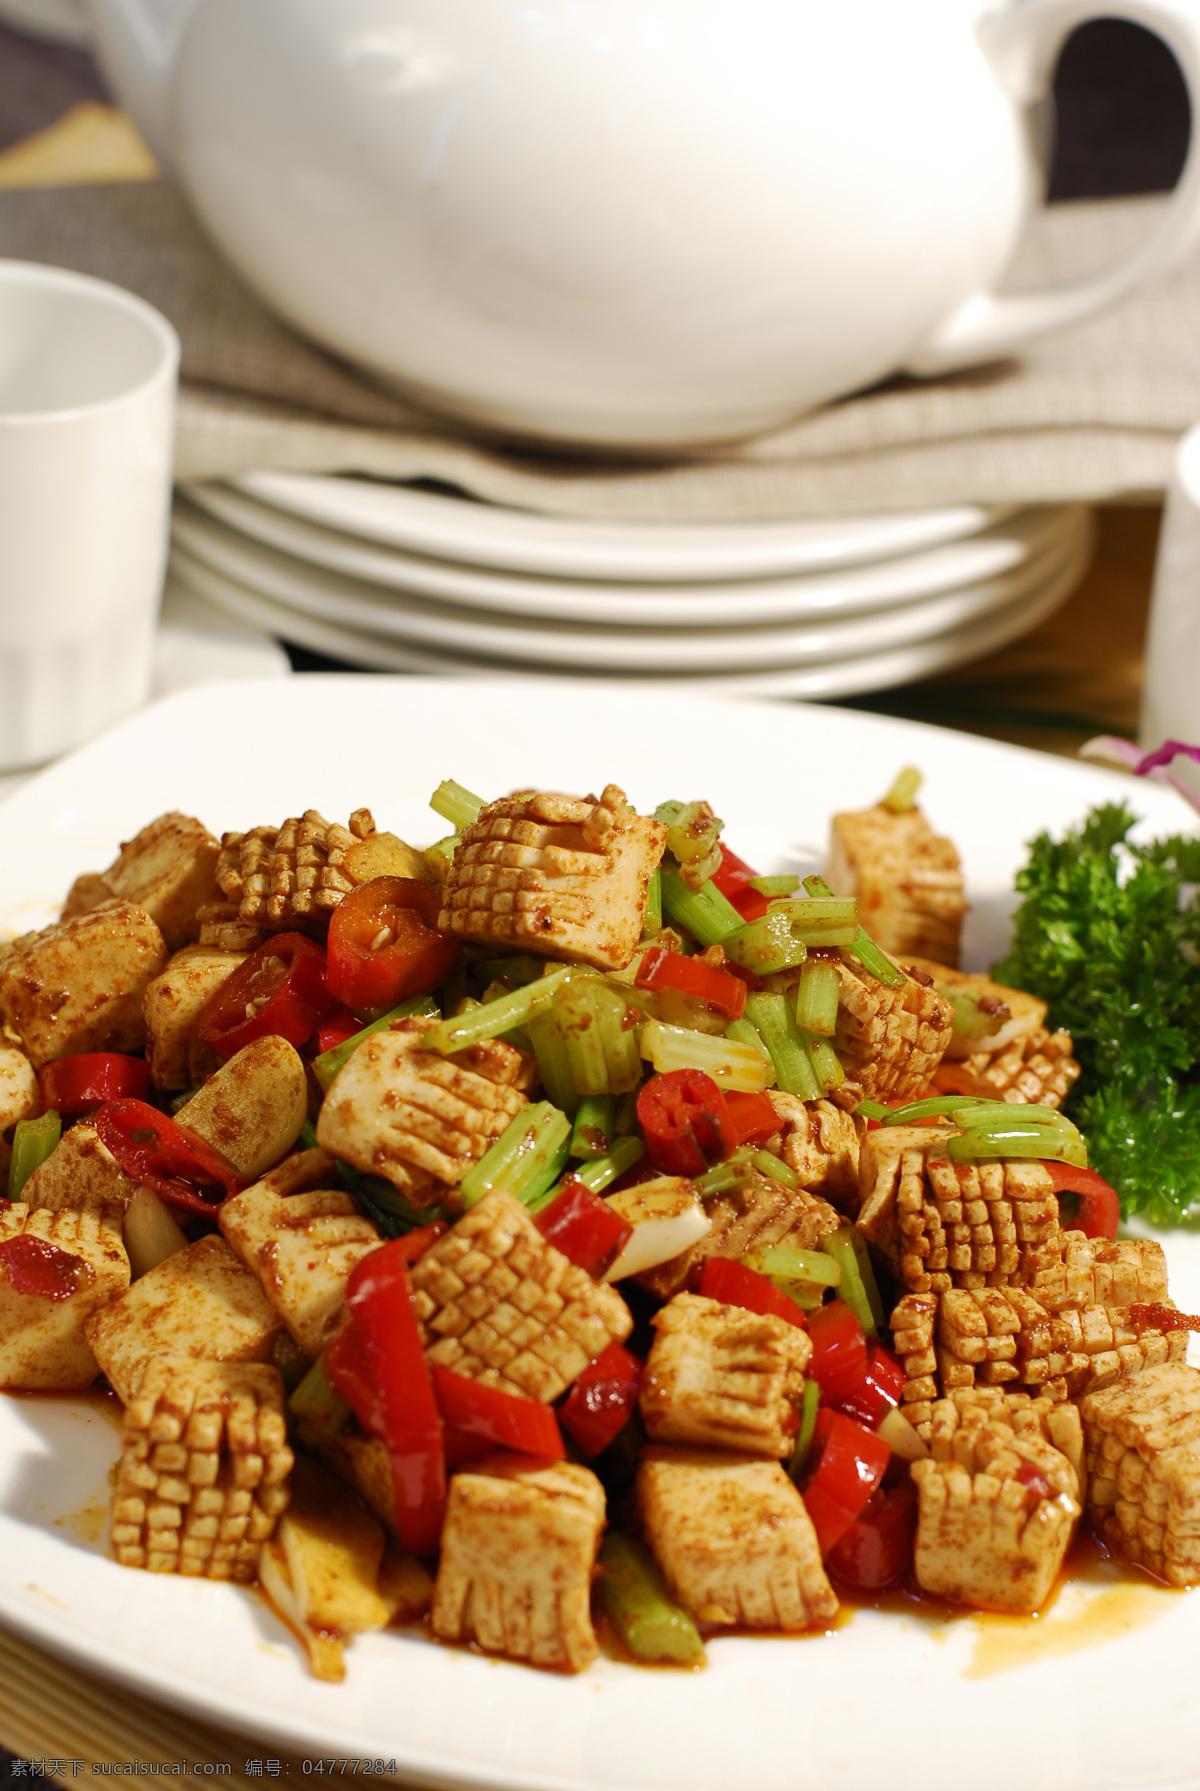 神仙豆腐 豆腐 花豆腐 瘦肉豆腐 菜谱 传统美食 餐饮美食